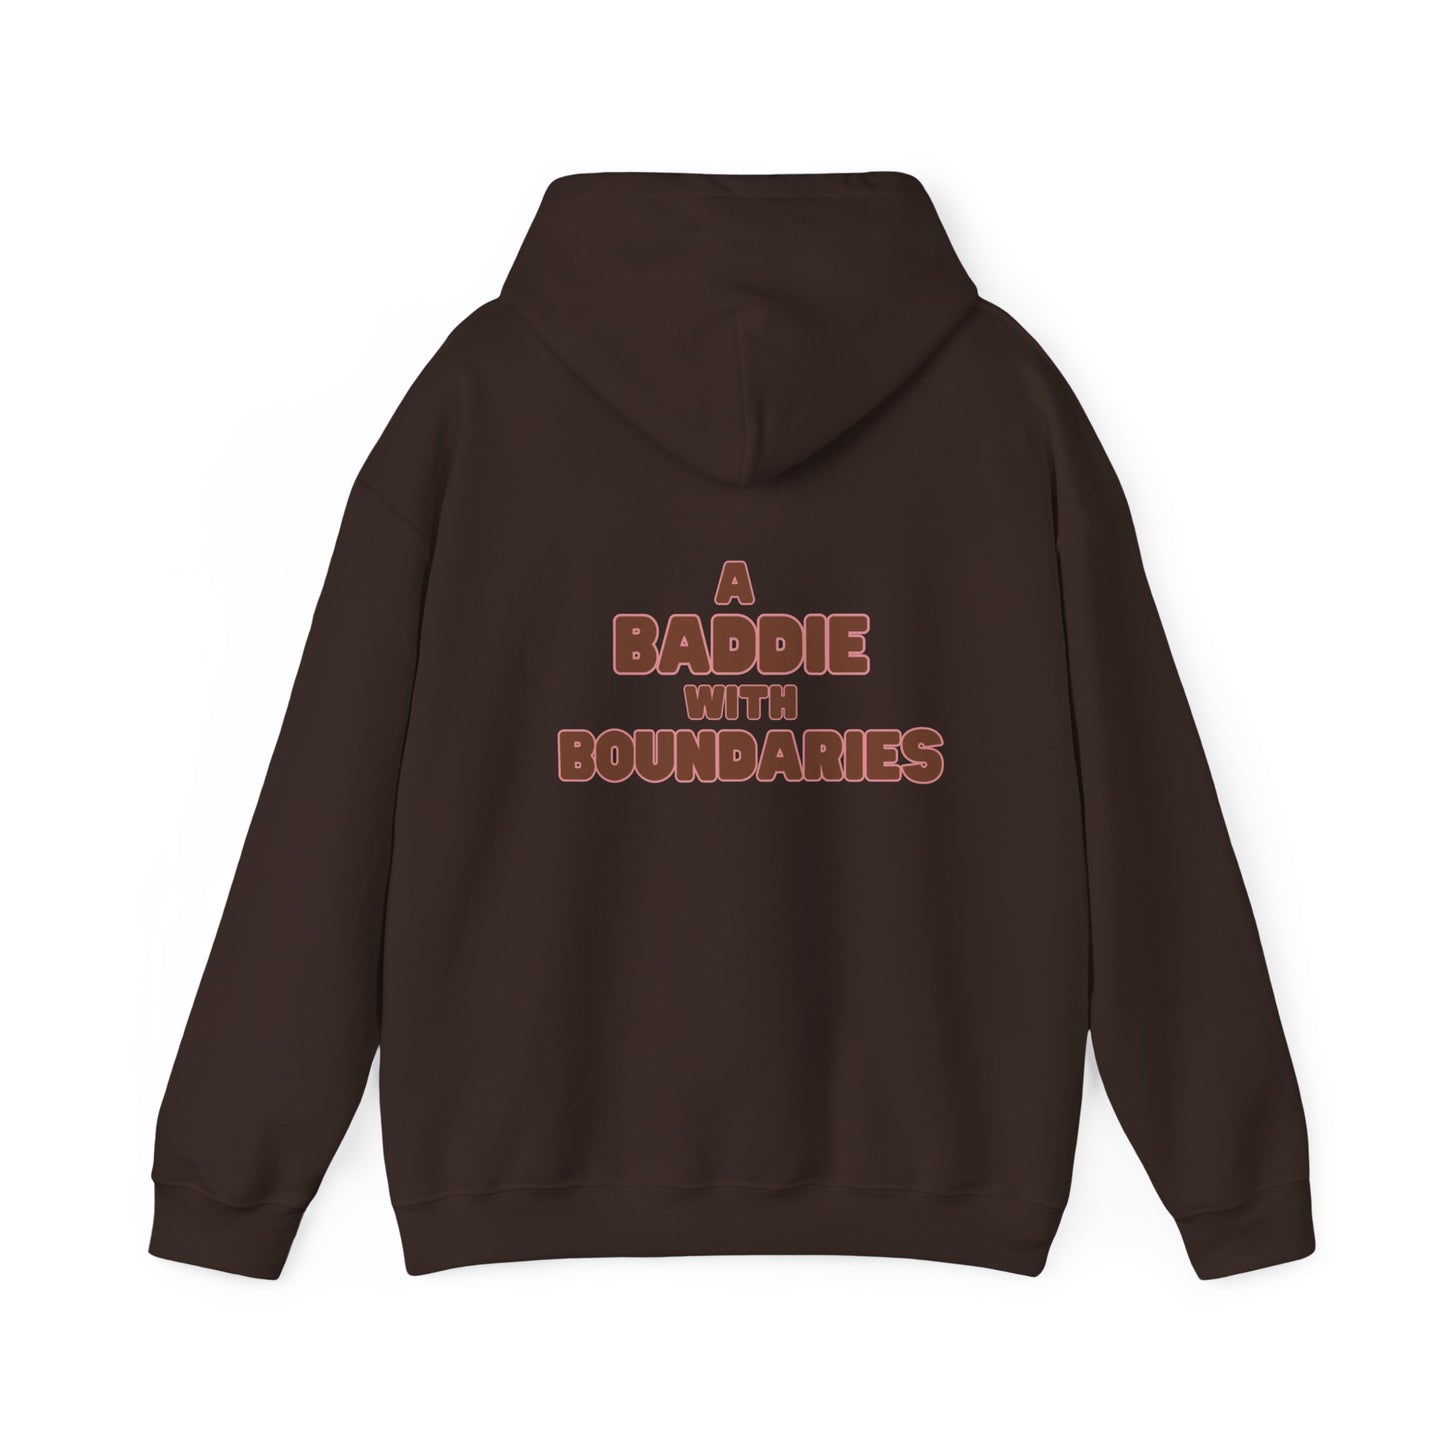 "A Baddie with Boundaries" Unisex Heavy Blend™ Hooded Sweatshirt